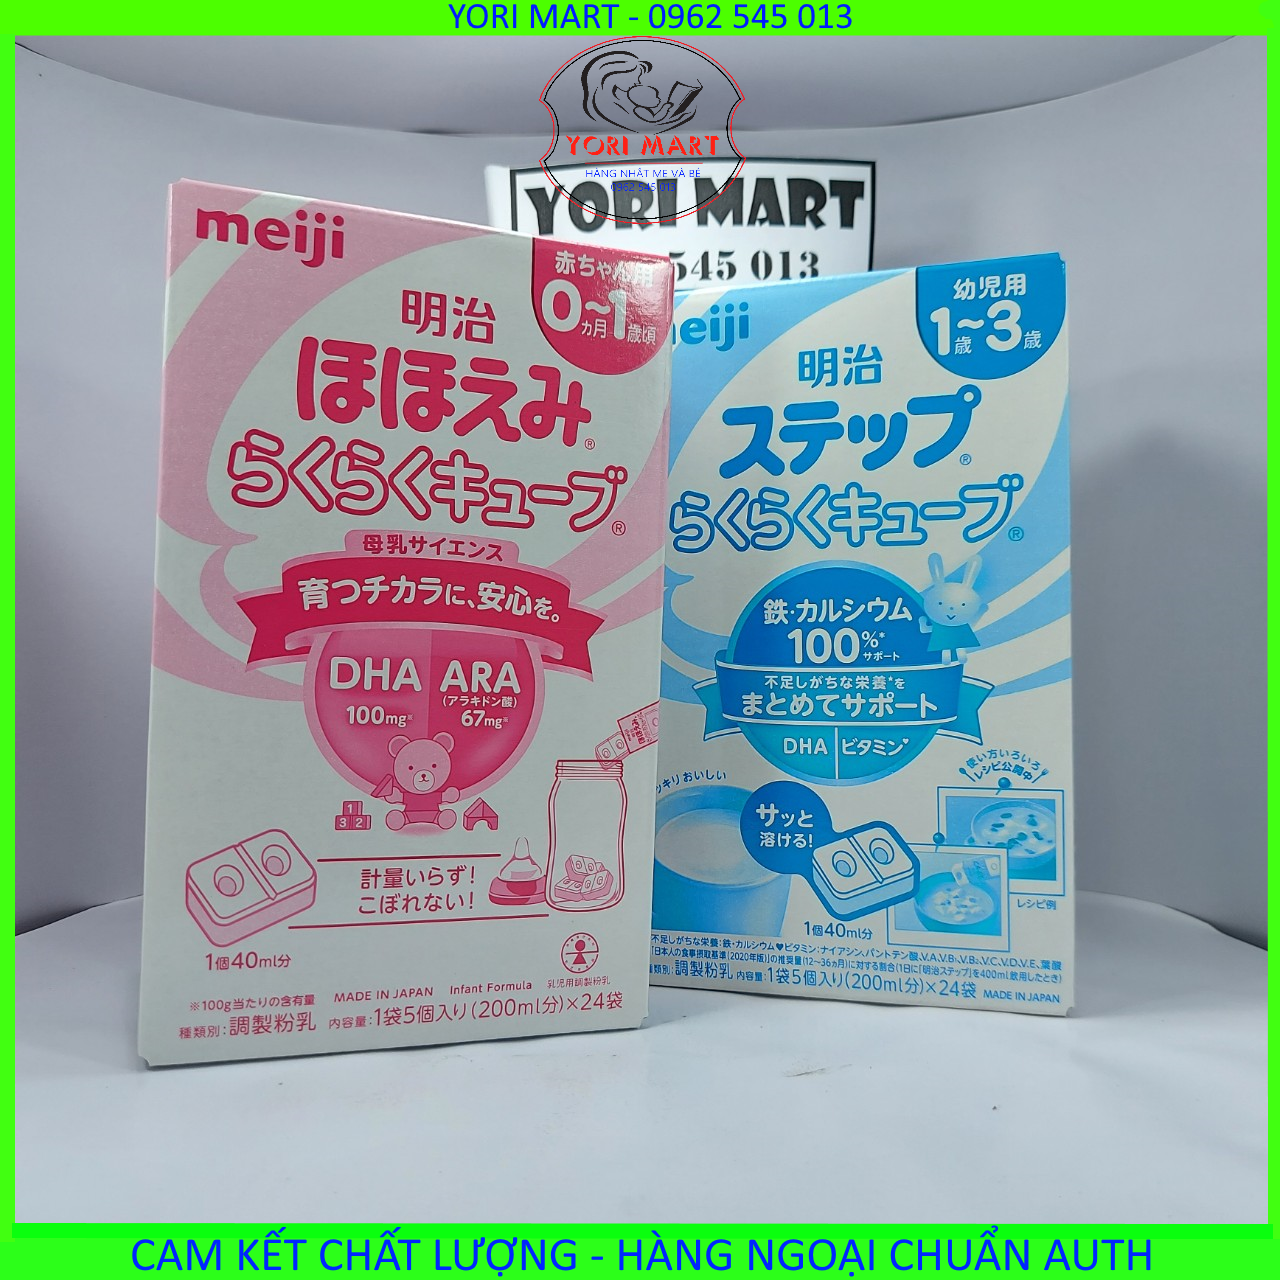 Sữa Meiji 24 thanh 648g nội địa Nhật